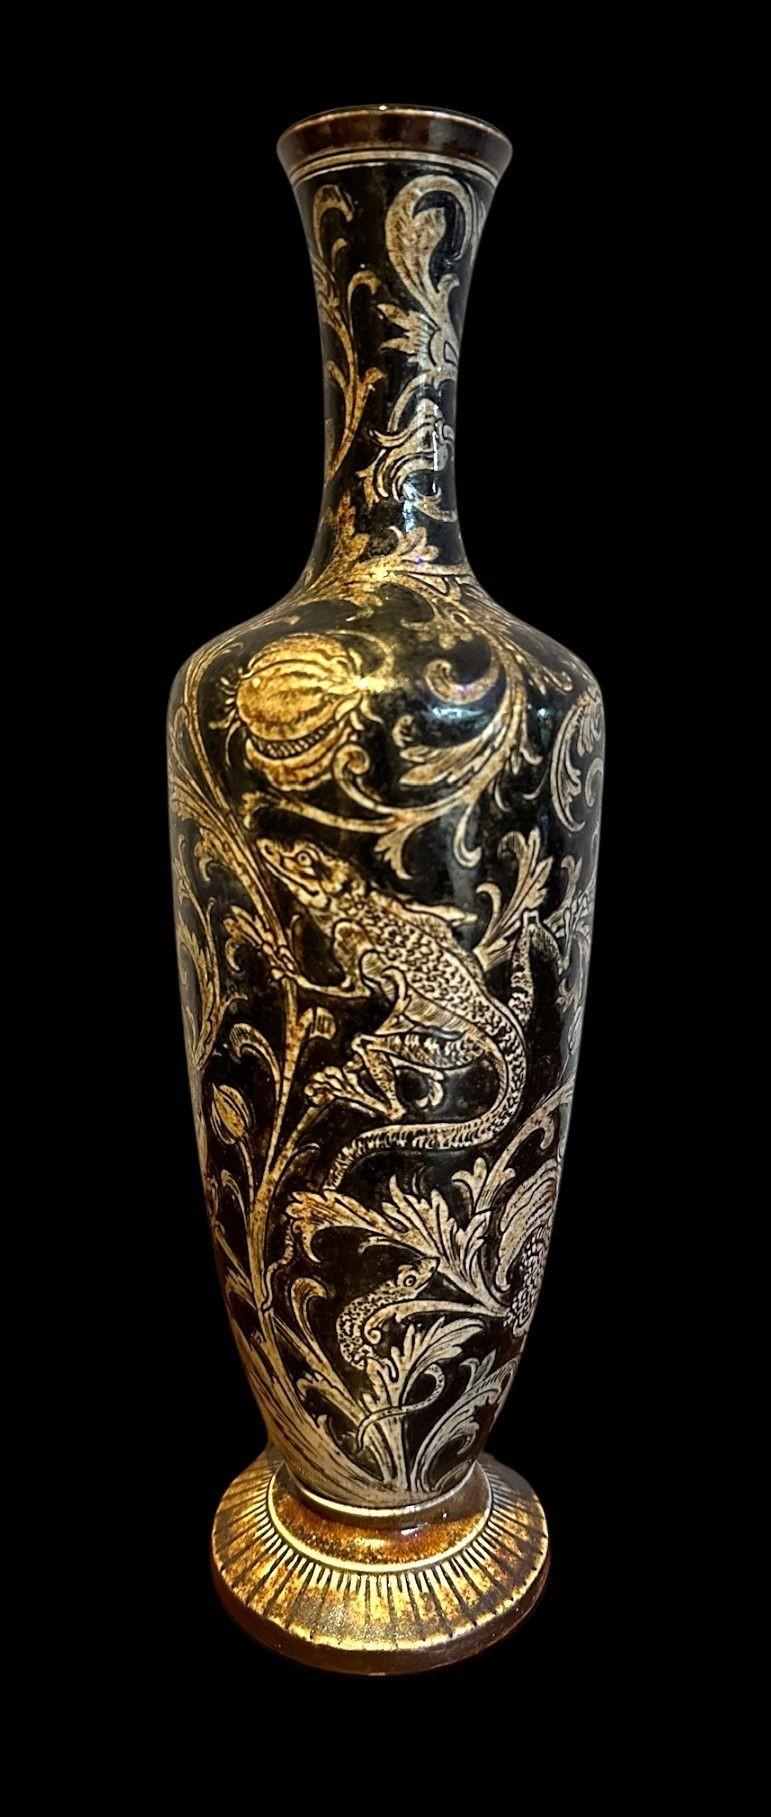 5465
Vase der Gebrüder Martin, verziert mit Eidechsen inmitten von Blattwerk und Samenköpfen
31cm hoch
Datiert 1893